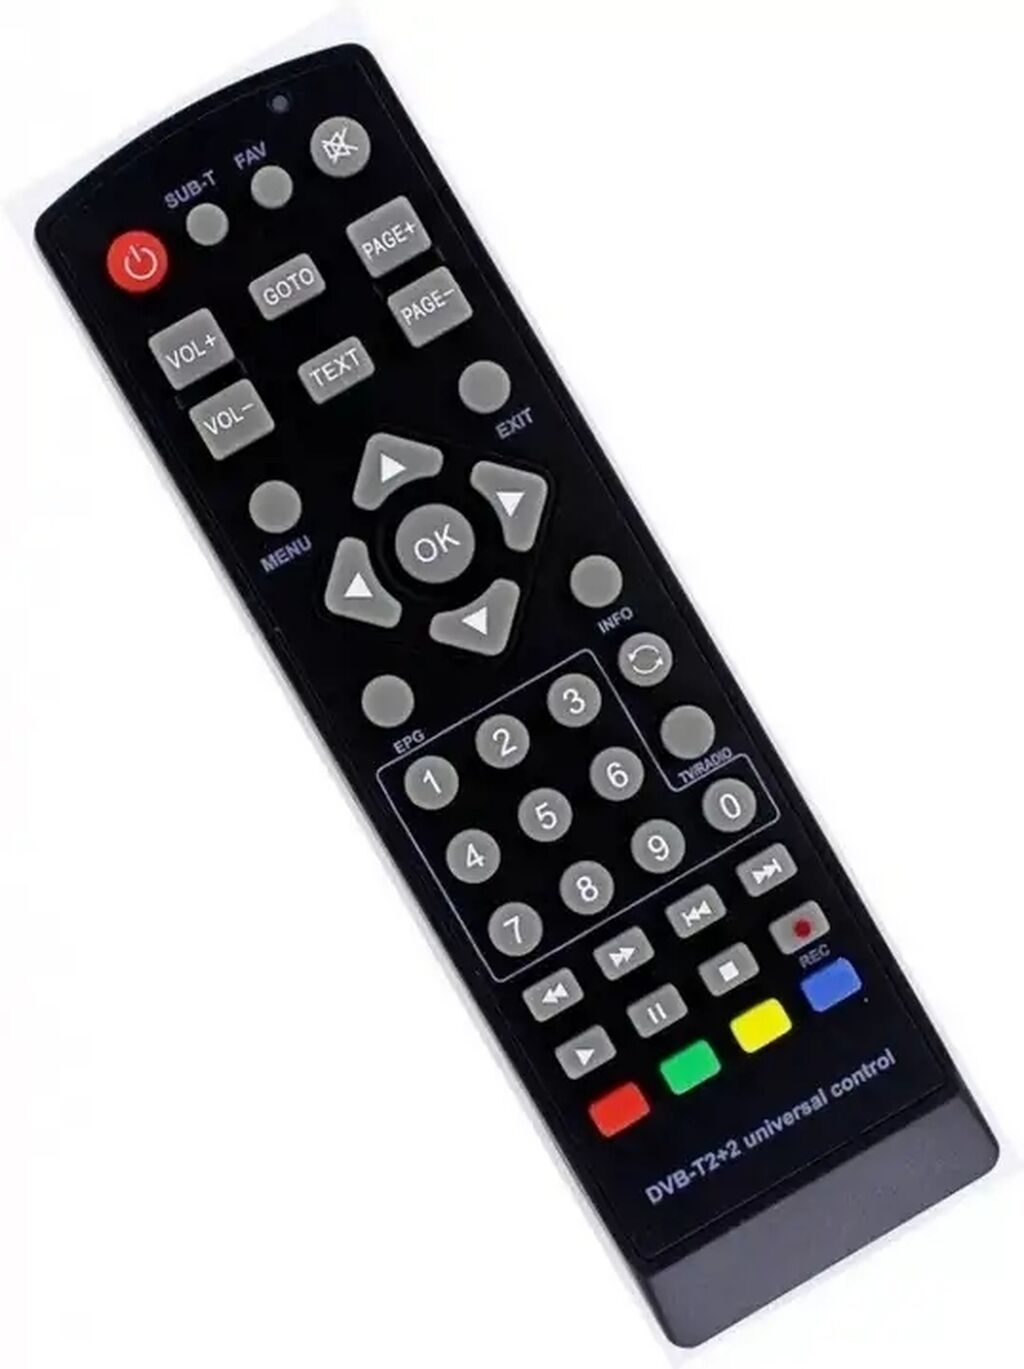 Авито пульт для телевизора. Huayu DVB-t2 2 универсальный пульт. Пульт Huayu DVB-t2+TV. Пульт для Huayu DVB-t2 +3 + TV. Пульт для ТВ приставок Huayu универсальный.